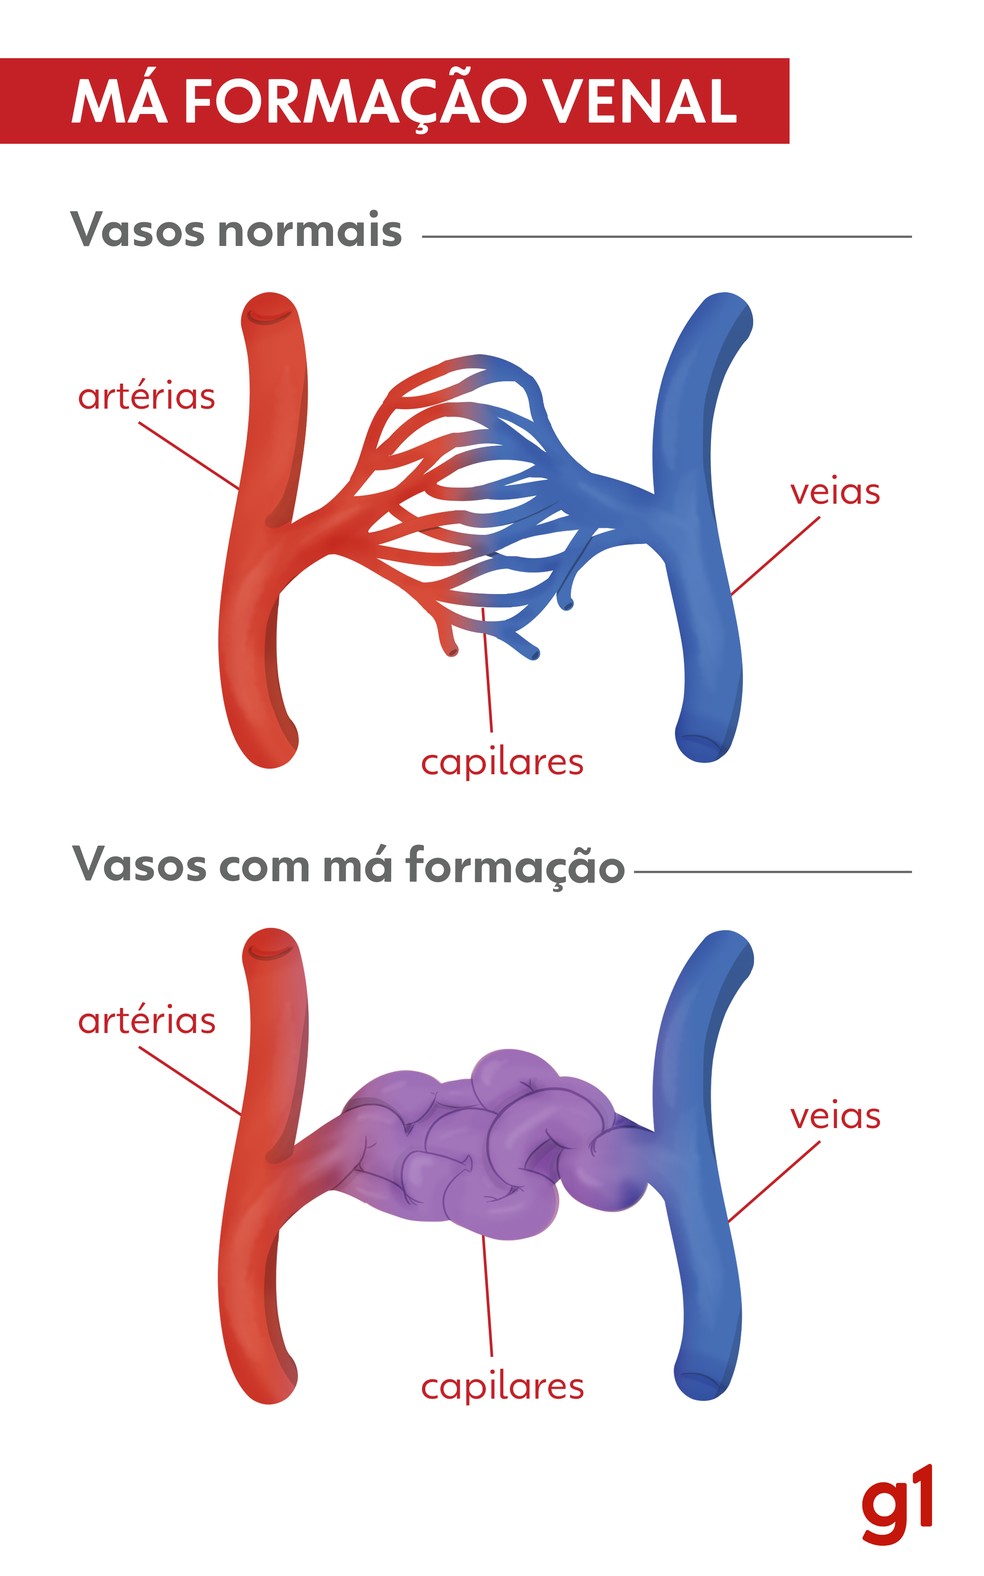 Imagem mostra como se dá a má formação venal — Foto: Artes RPC/ Gabriel Trinetto Pedrão